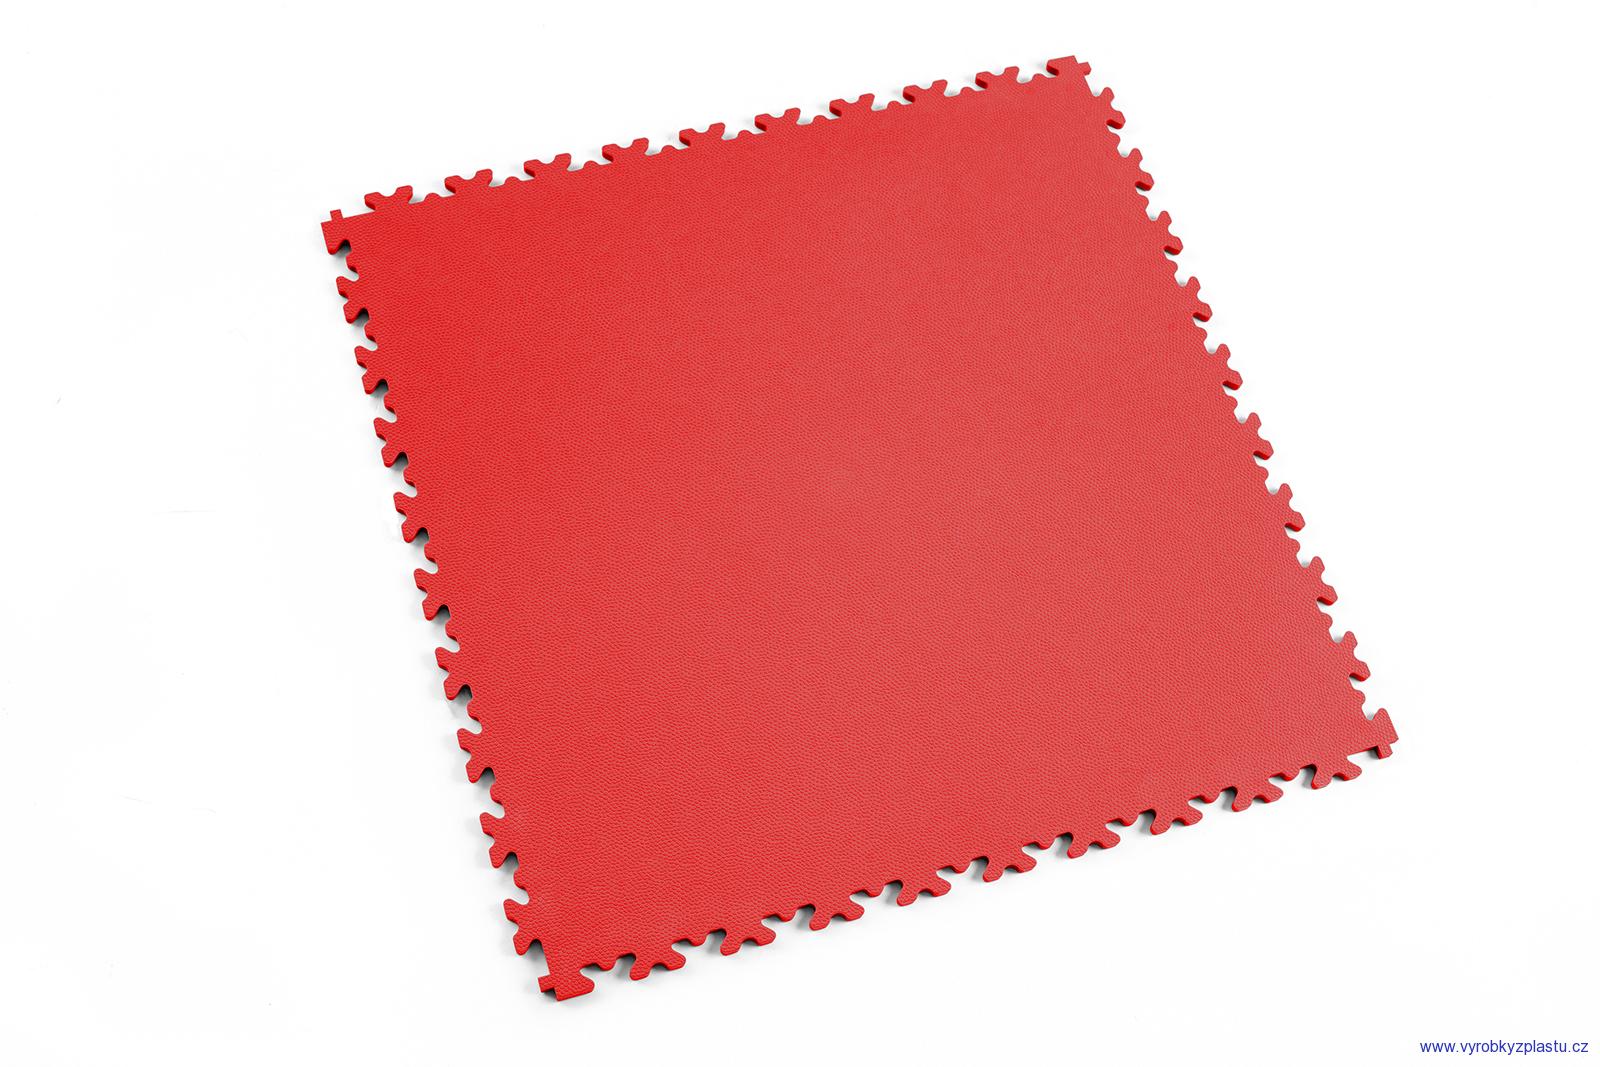 2020 (kůže) - dlaždice pro vysokou zátěž - Rosso Red